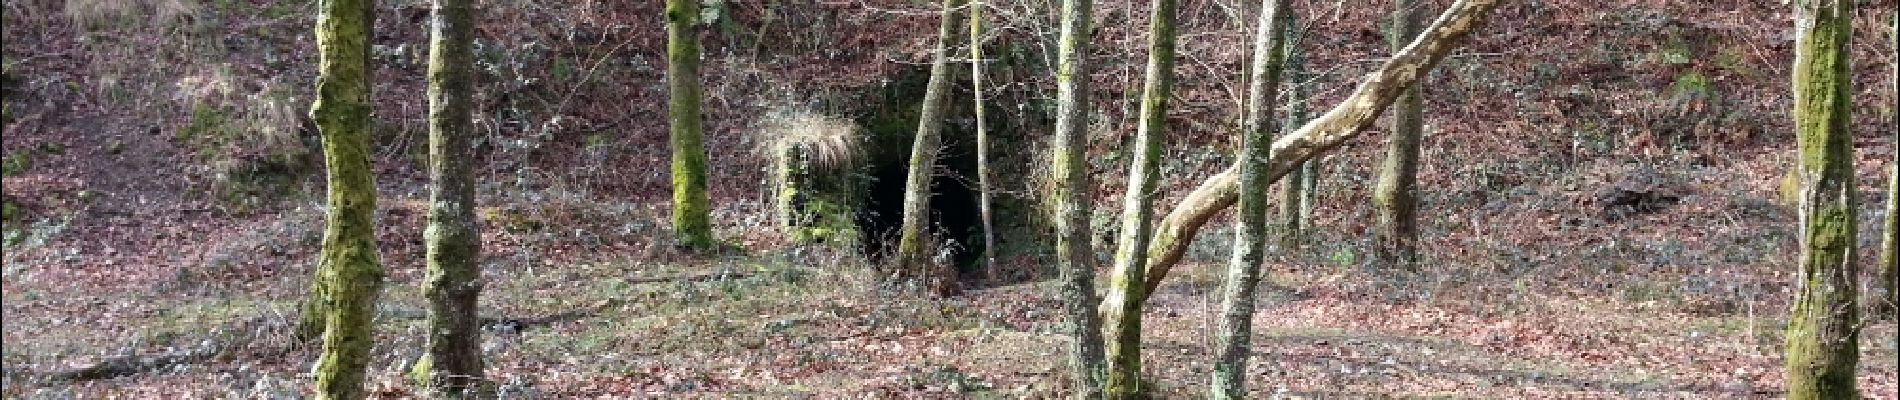 Point of interest Irun - tunnel   - Photo